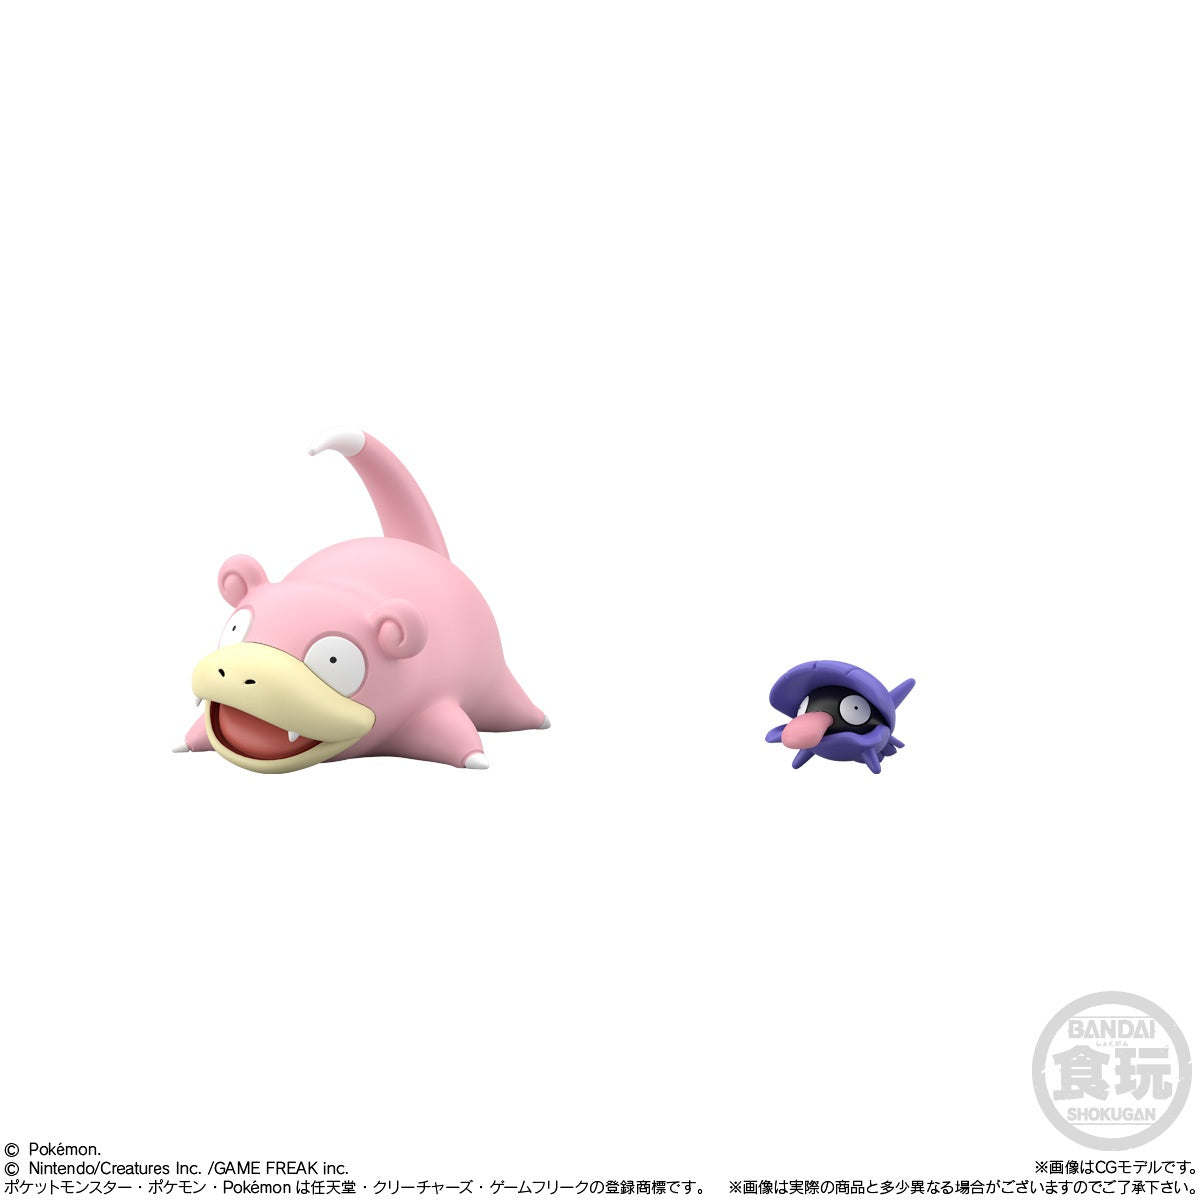 Bandai - Shokugan - Pokemon Scale World - Kanto Region - Set 3 (Reissue) - Marvelous Toys